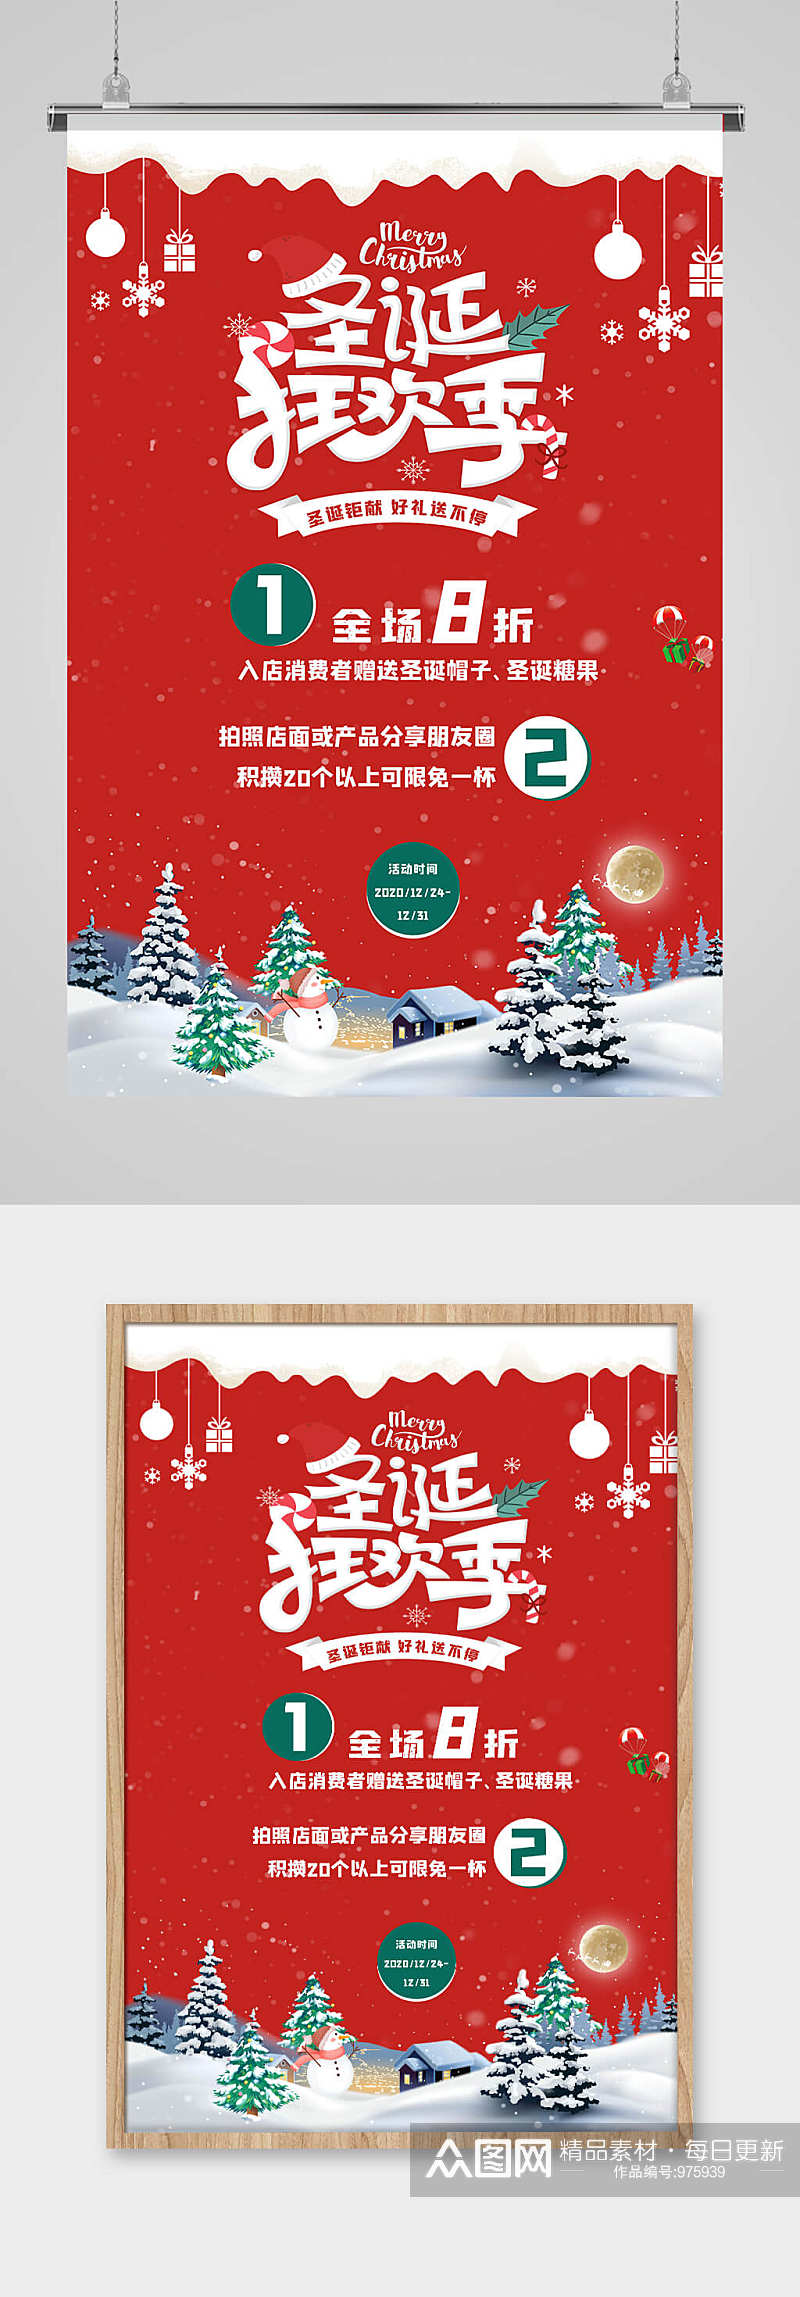 红色唯美圣诞狂欢季促销宣传海报素材